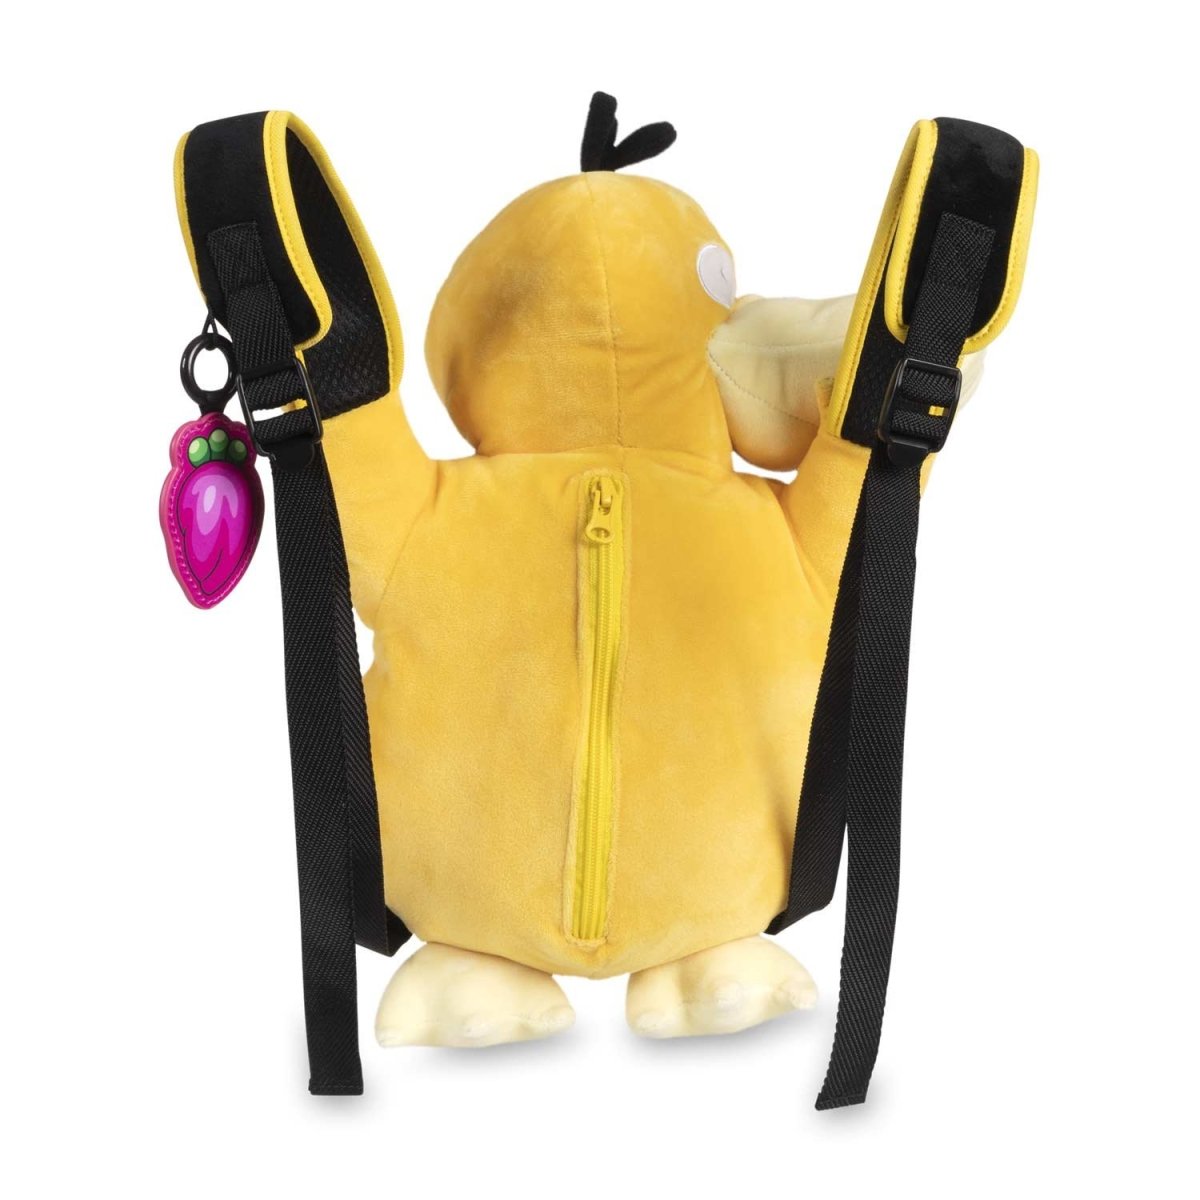 Psyduck Pokémon Partner Backpack